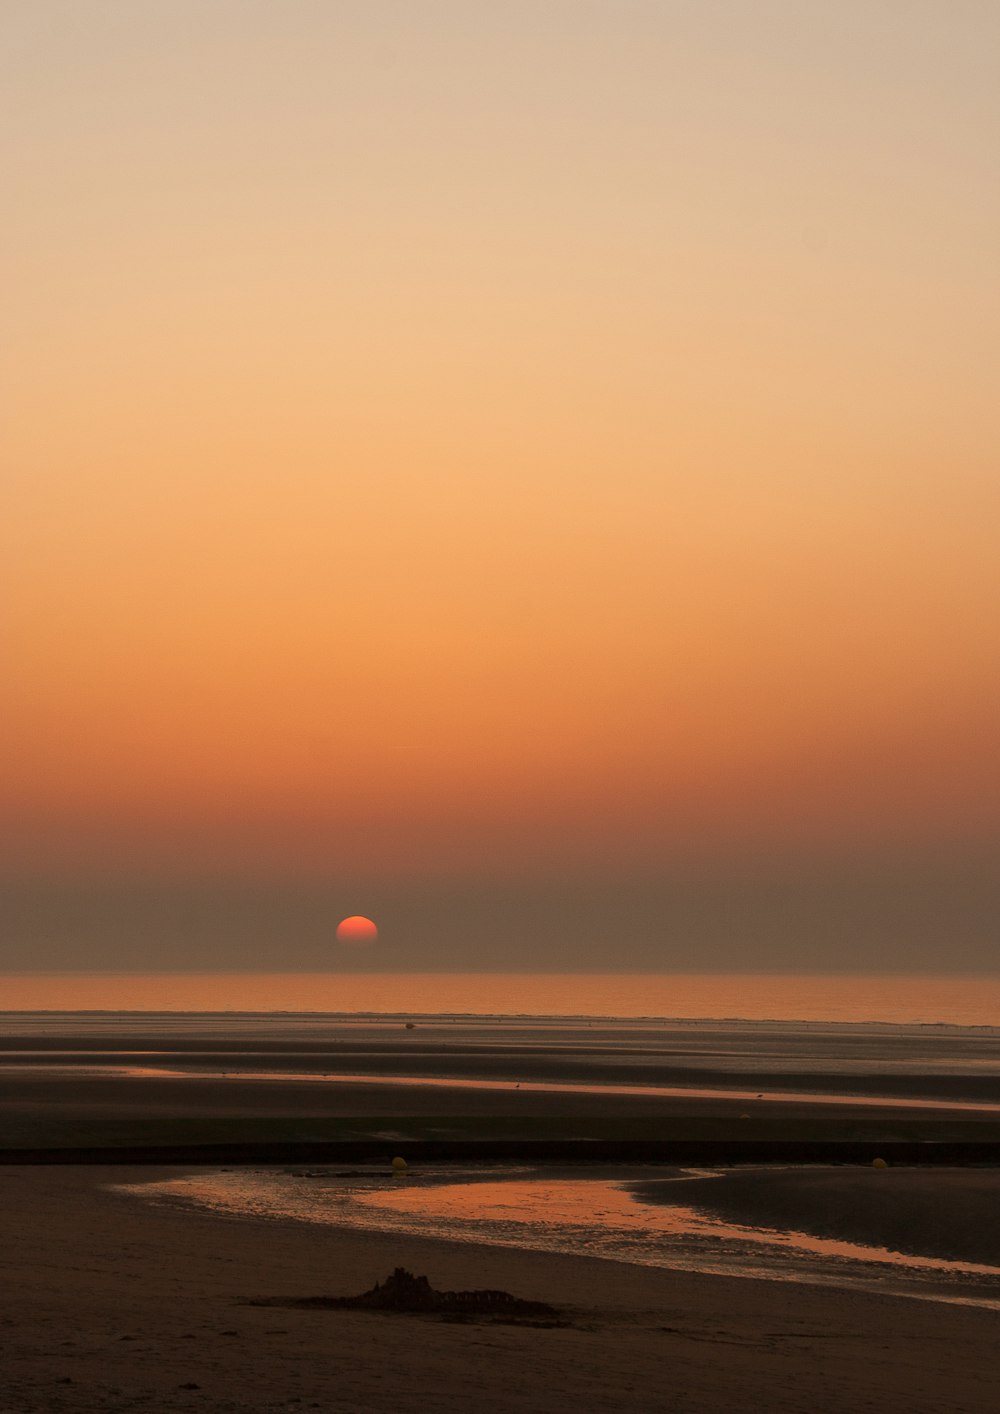 seashore during golden hour